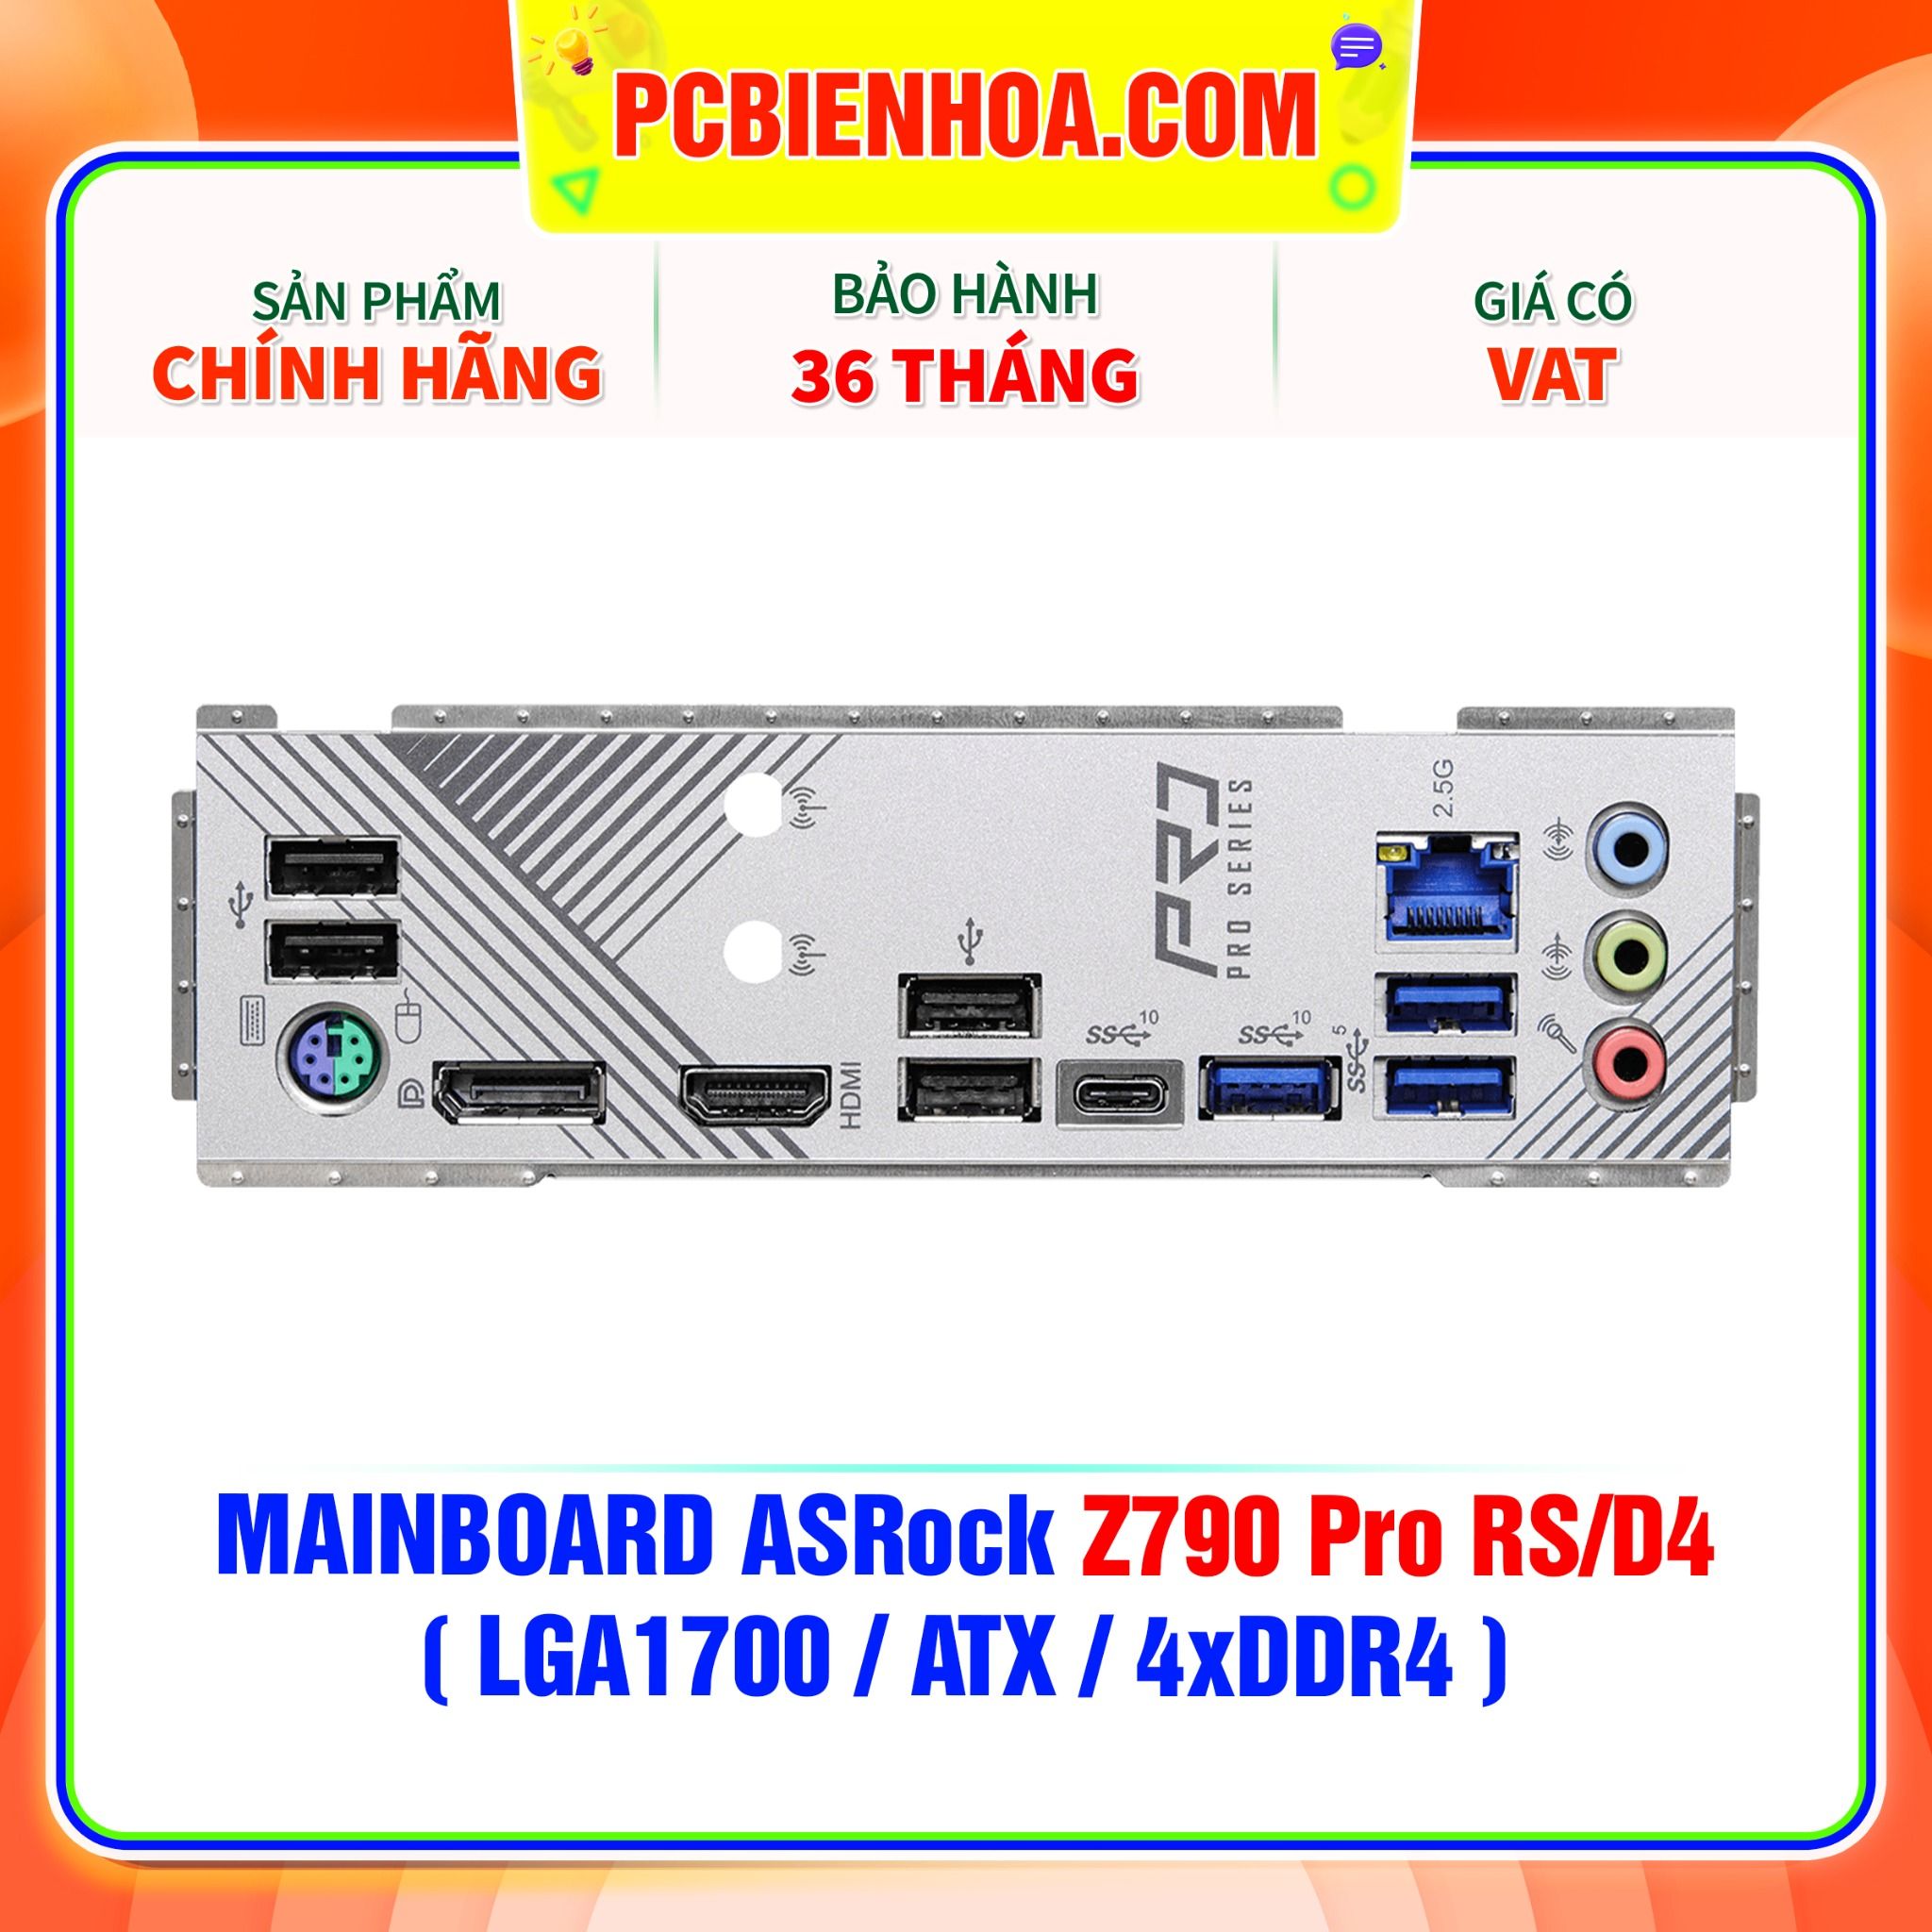  MAINBOARD ASRock Z790 Pro RS/D4 ( LGA1700 / ATX / 4xDDR4 ) 